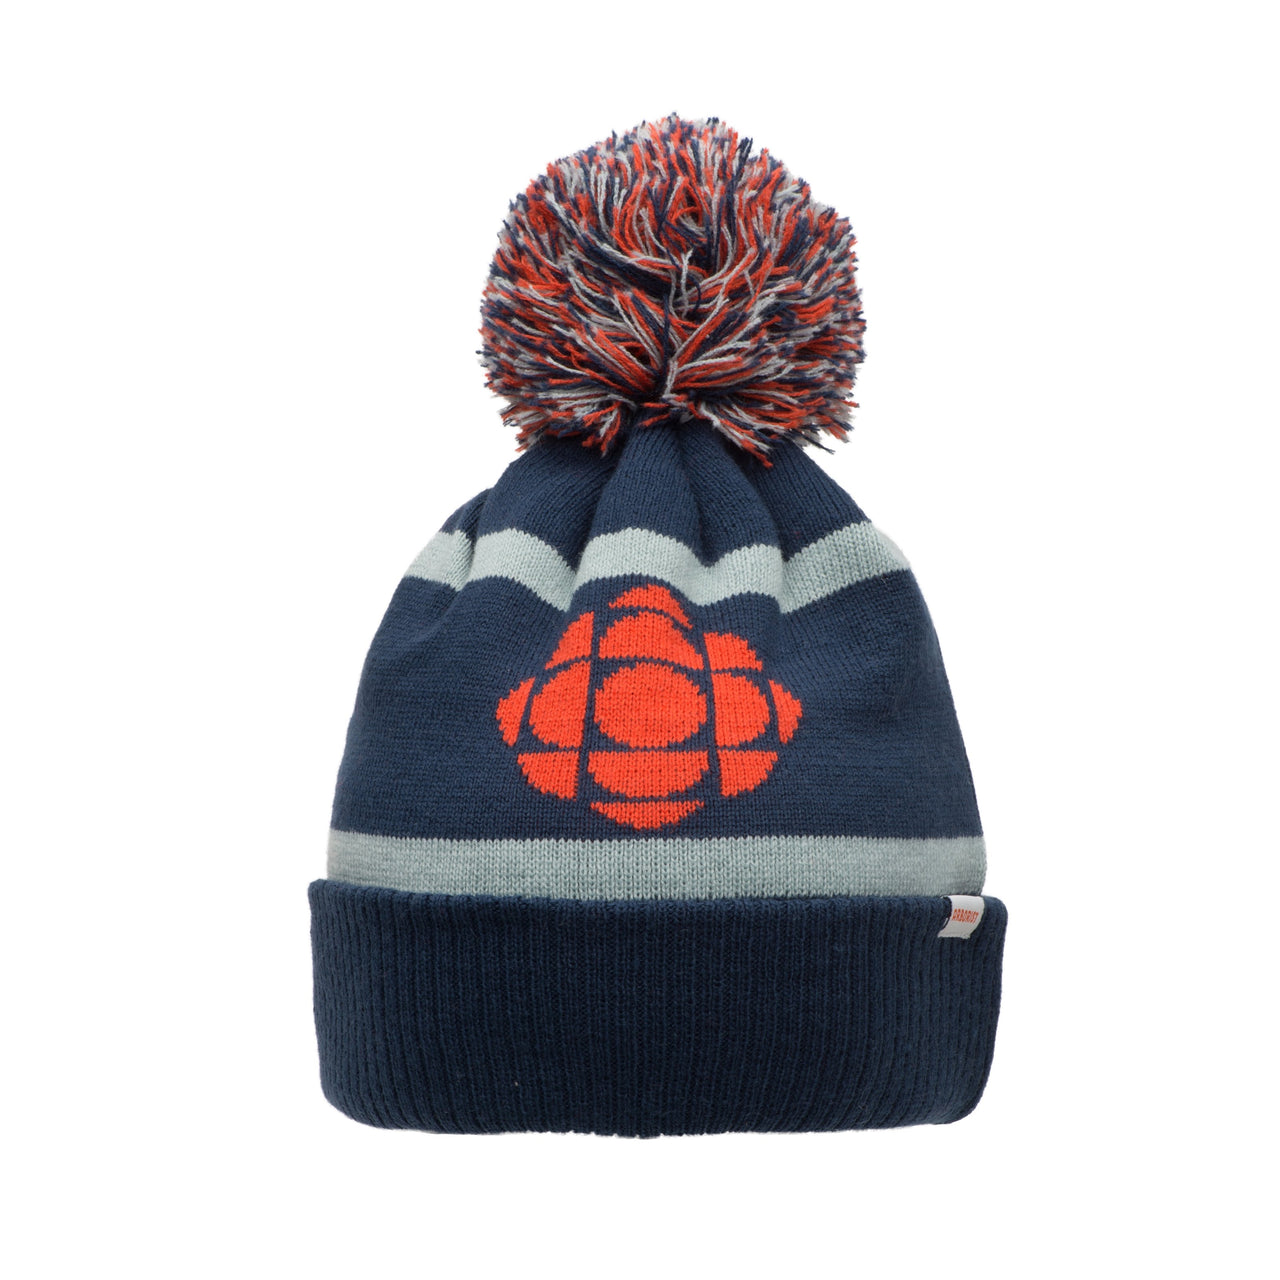 Drake General Store - ARBORIST CBC Canada Kids Toque